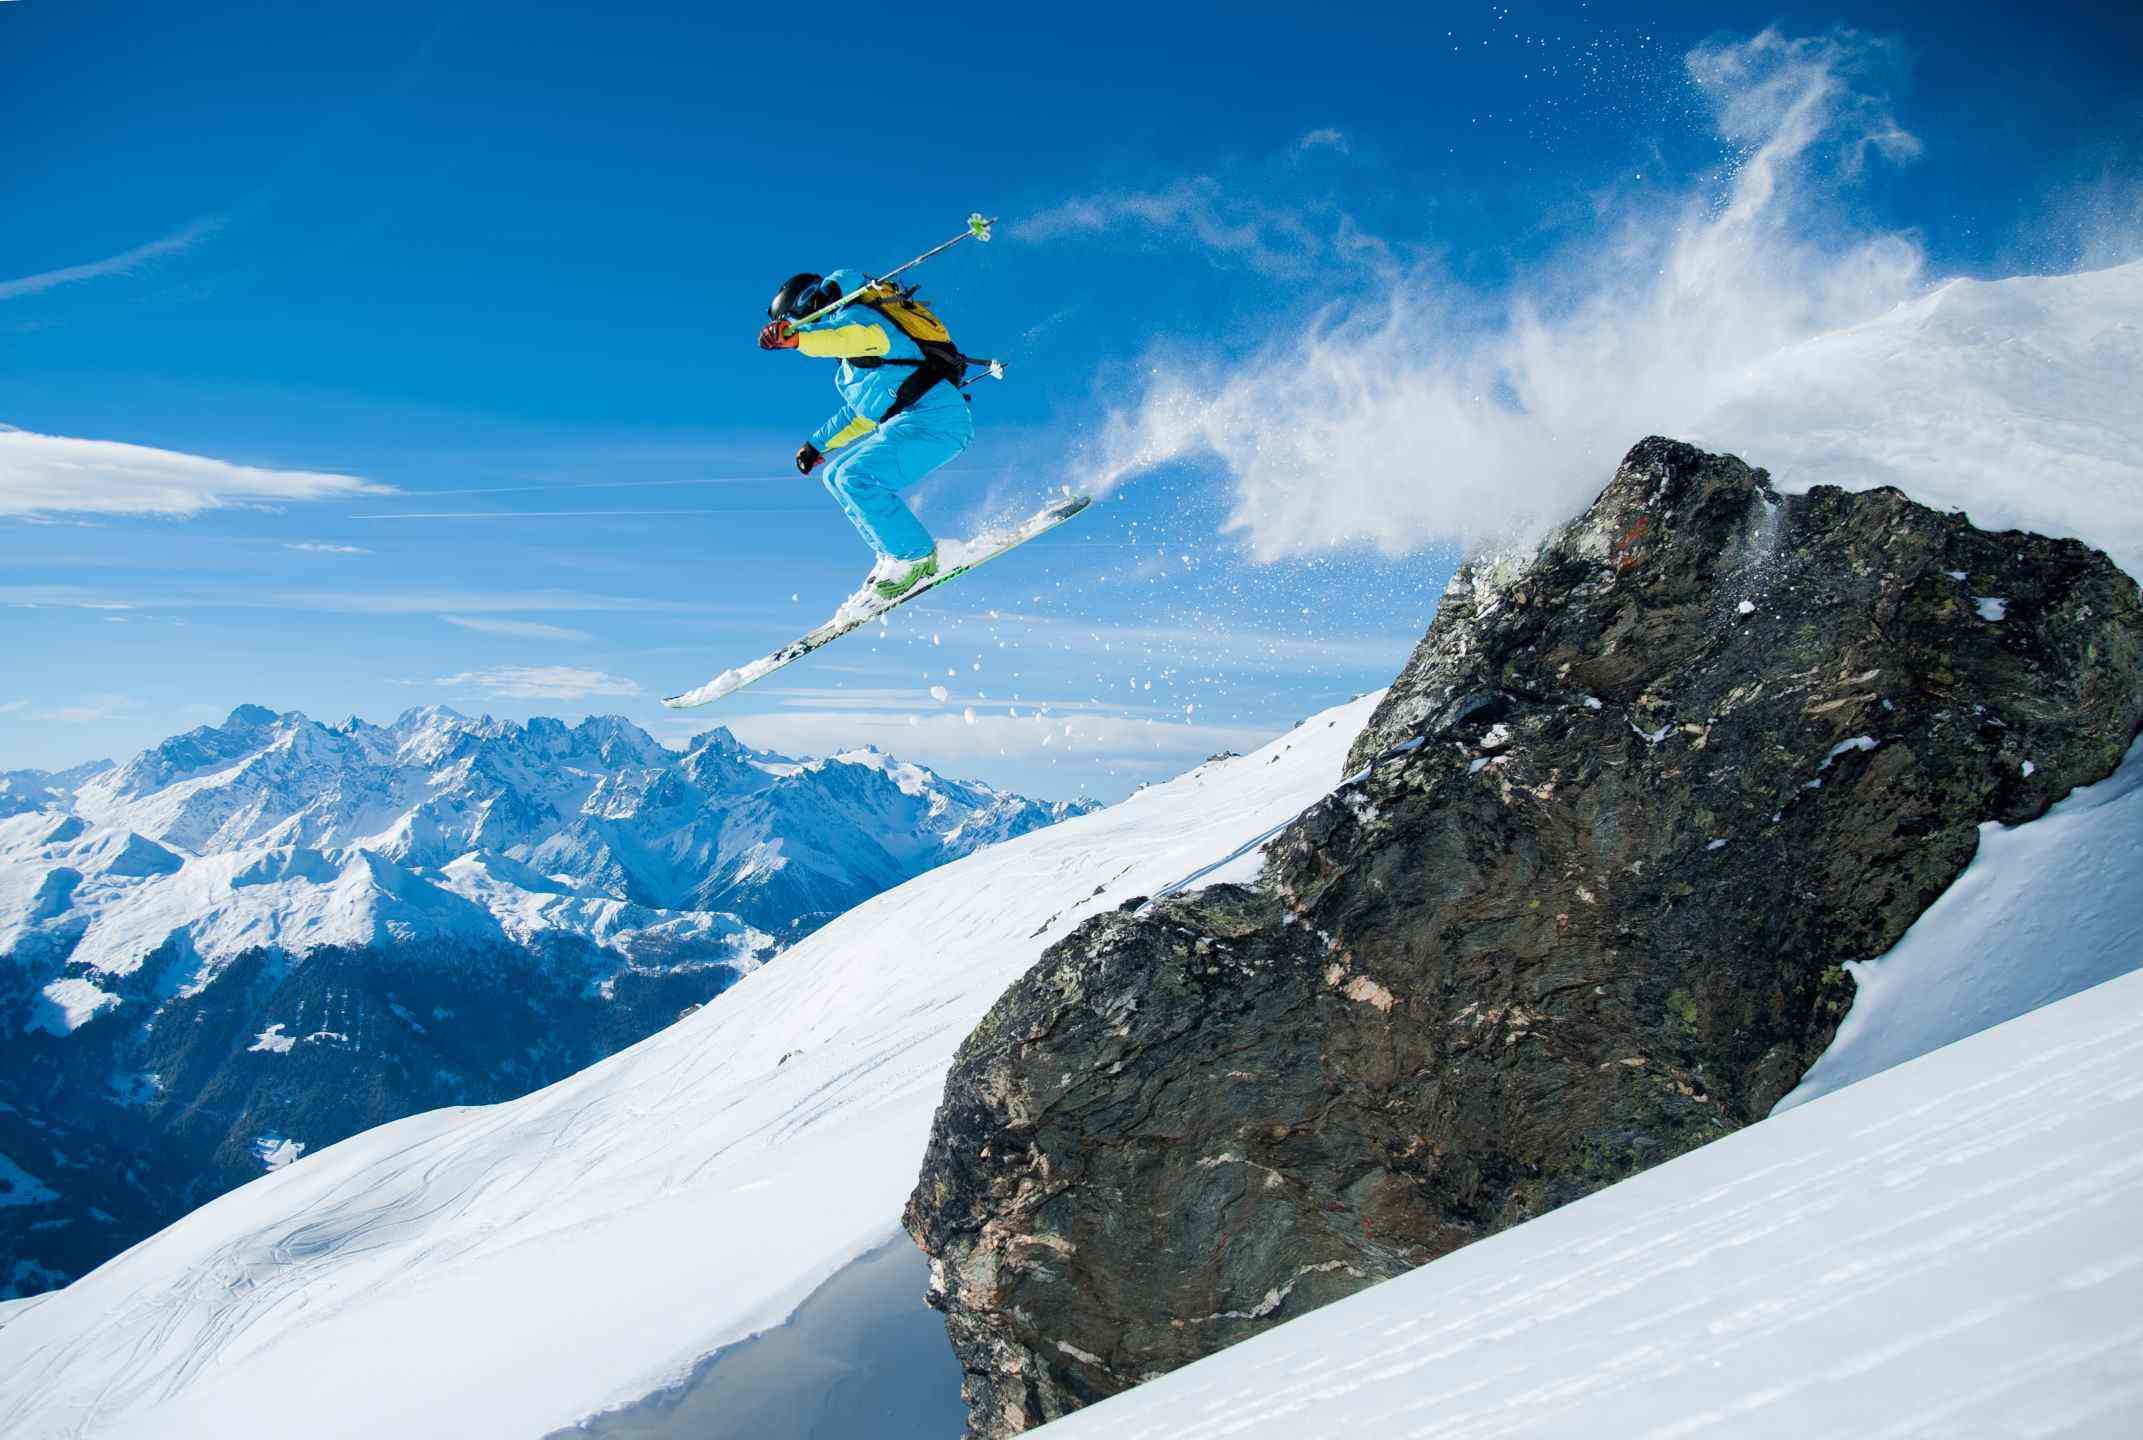 Réservez votre ski pass - Actualités